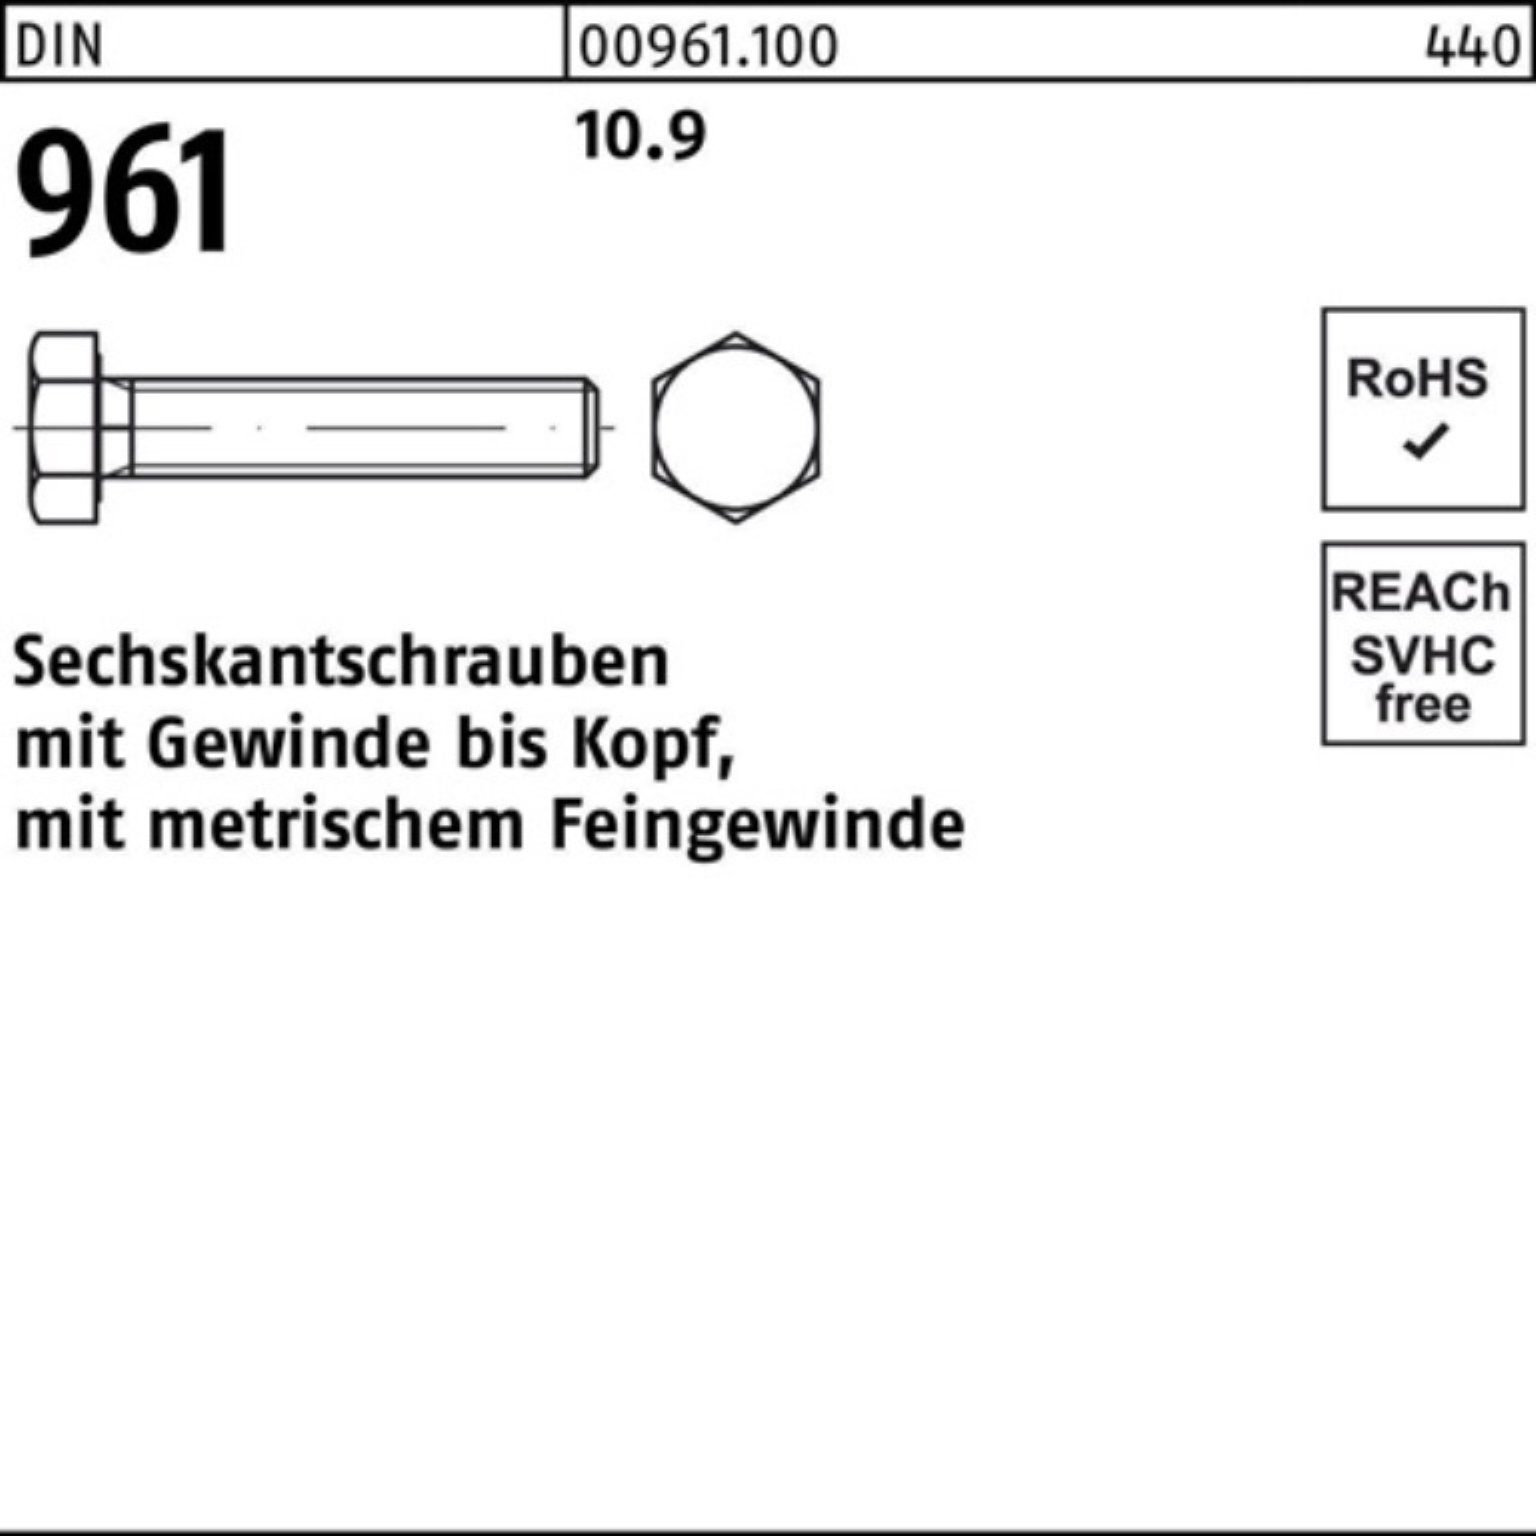 VG Sechskantschraube 10.9 DIN DIN Sechskantschraube Stück 25 961 Reyher Pack M16x1,5x140 100er